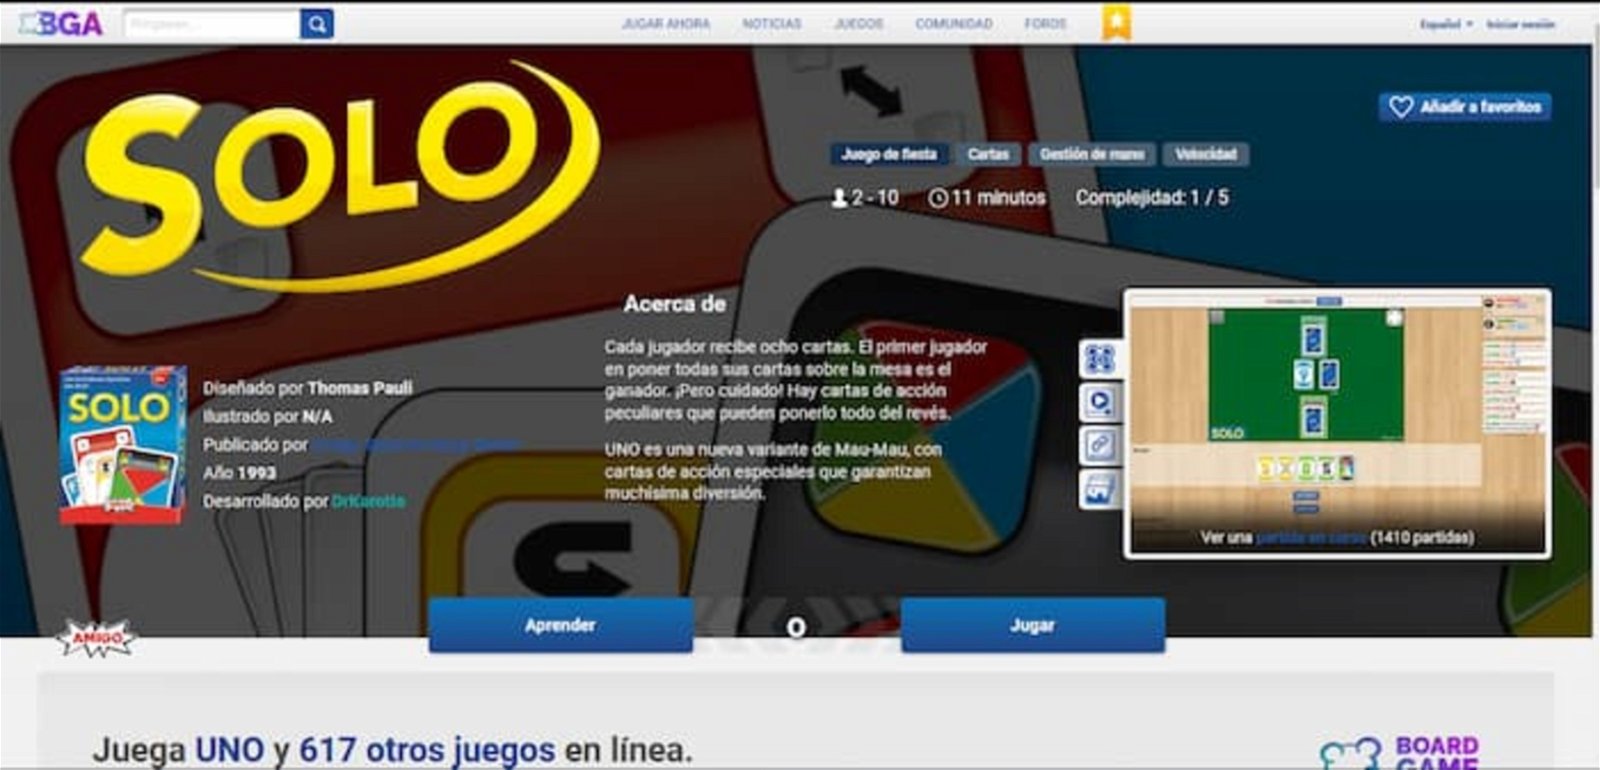 En esta plataforma online podrás jugar partidas de Uno, aunque bajo el nombre de SOLO. Pero, aunque es muy intuitiva, requiere que te registres en ella